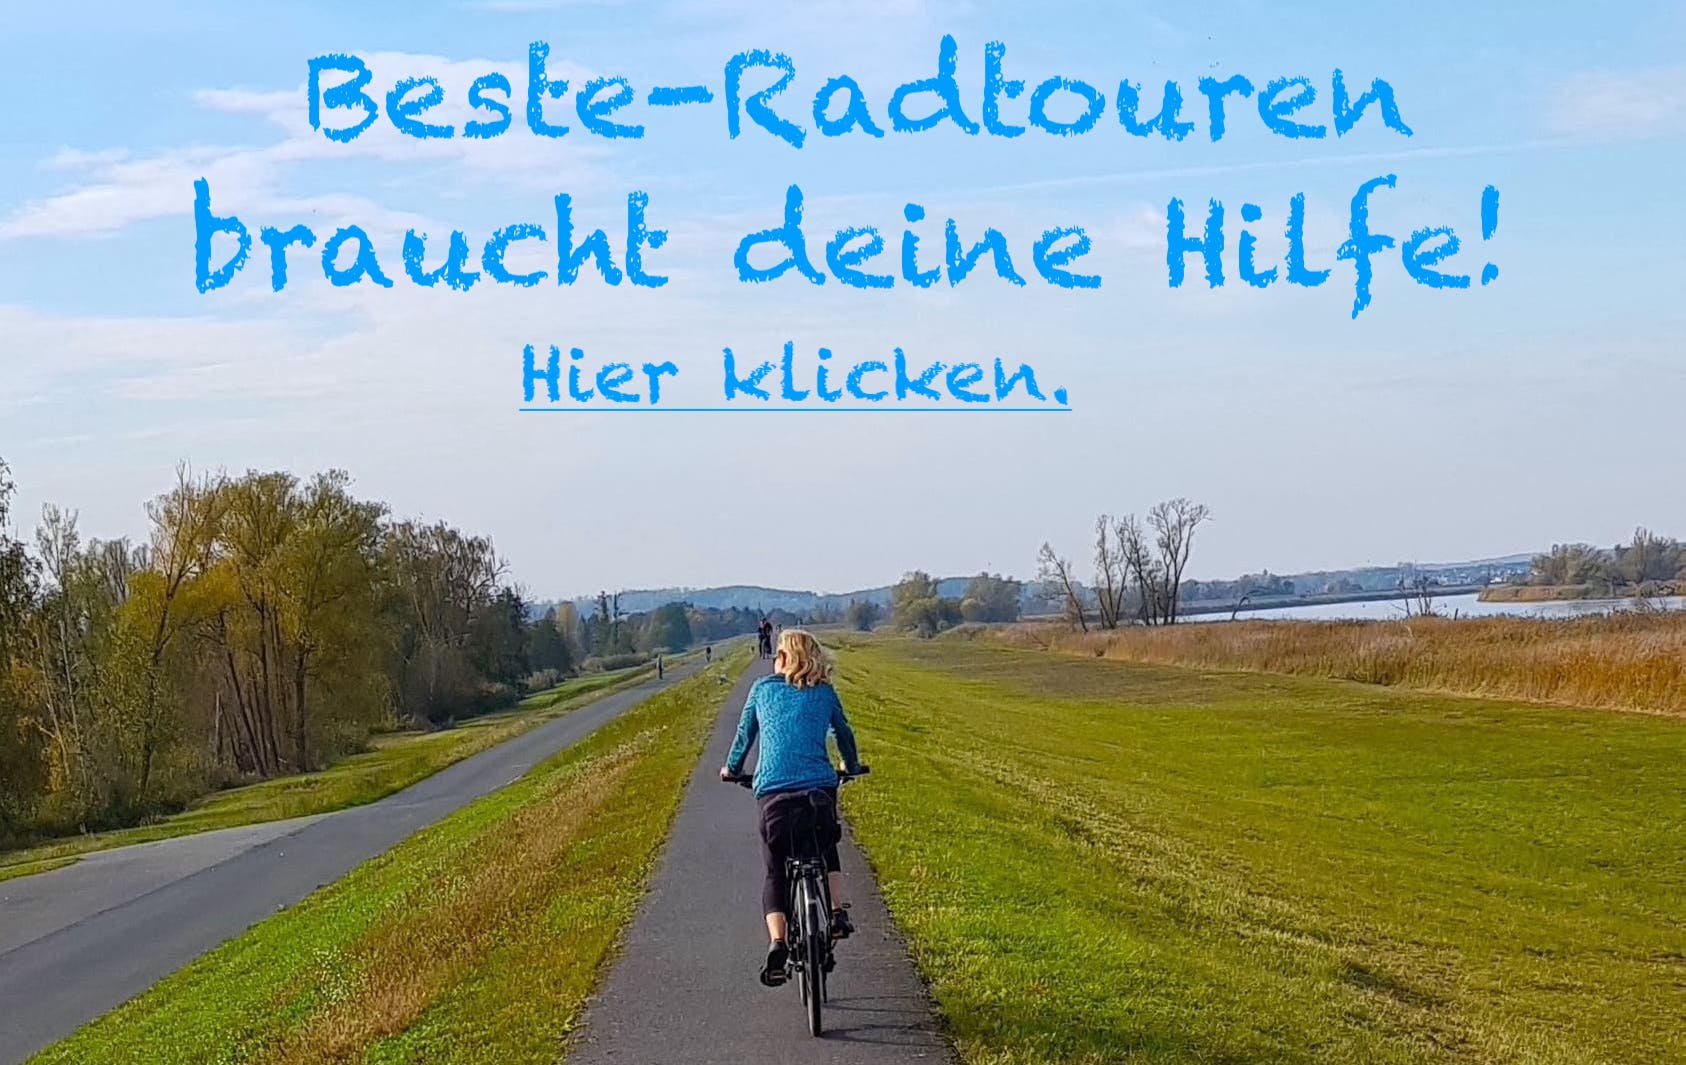 Aufruf von Beatrice Poschenrieder, die Webseite Beste-Radtouren.de zu unterstützen oder zu spenden